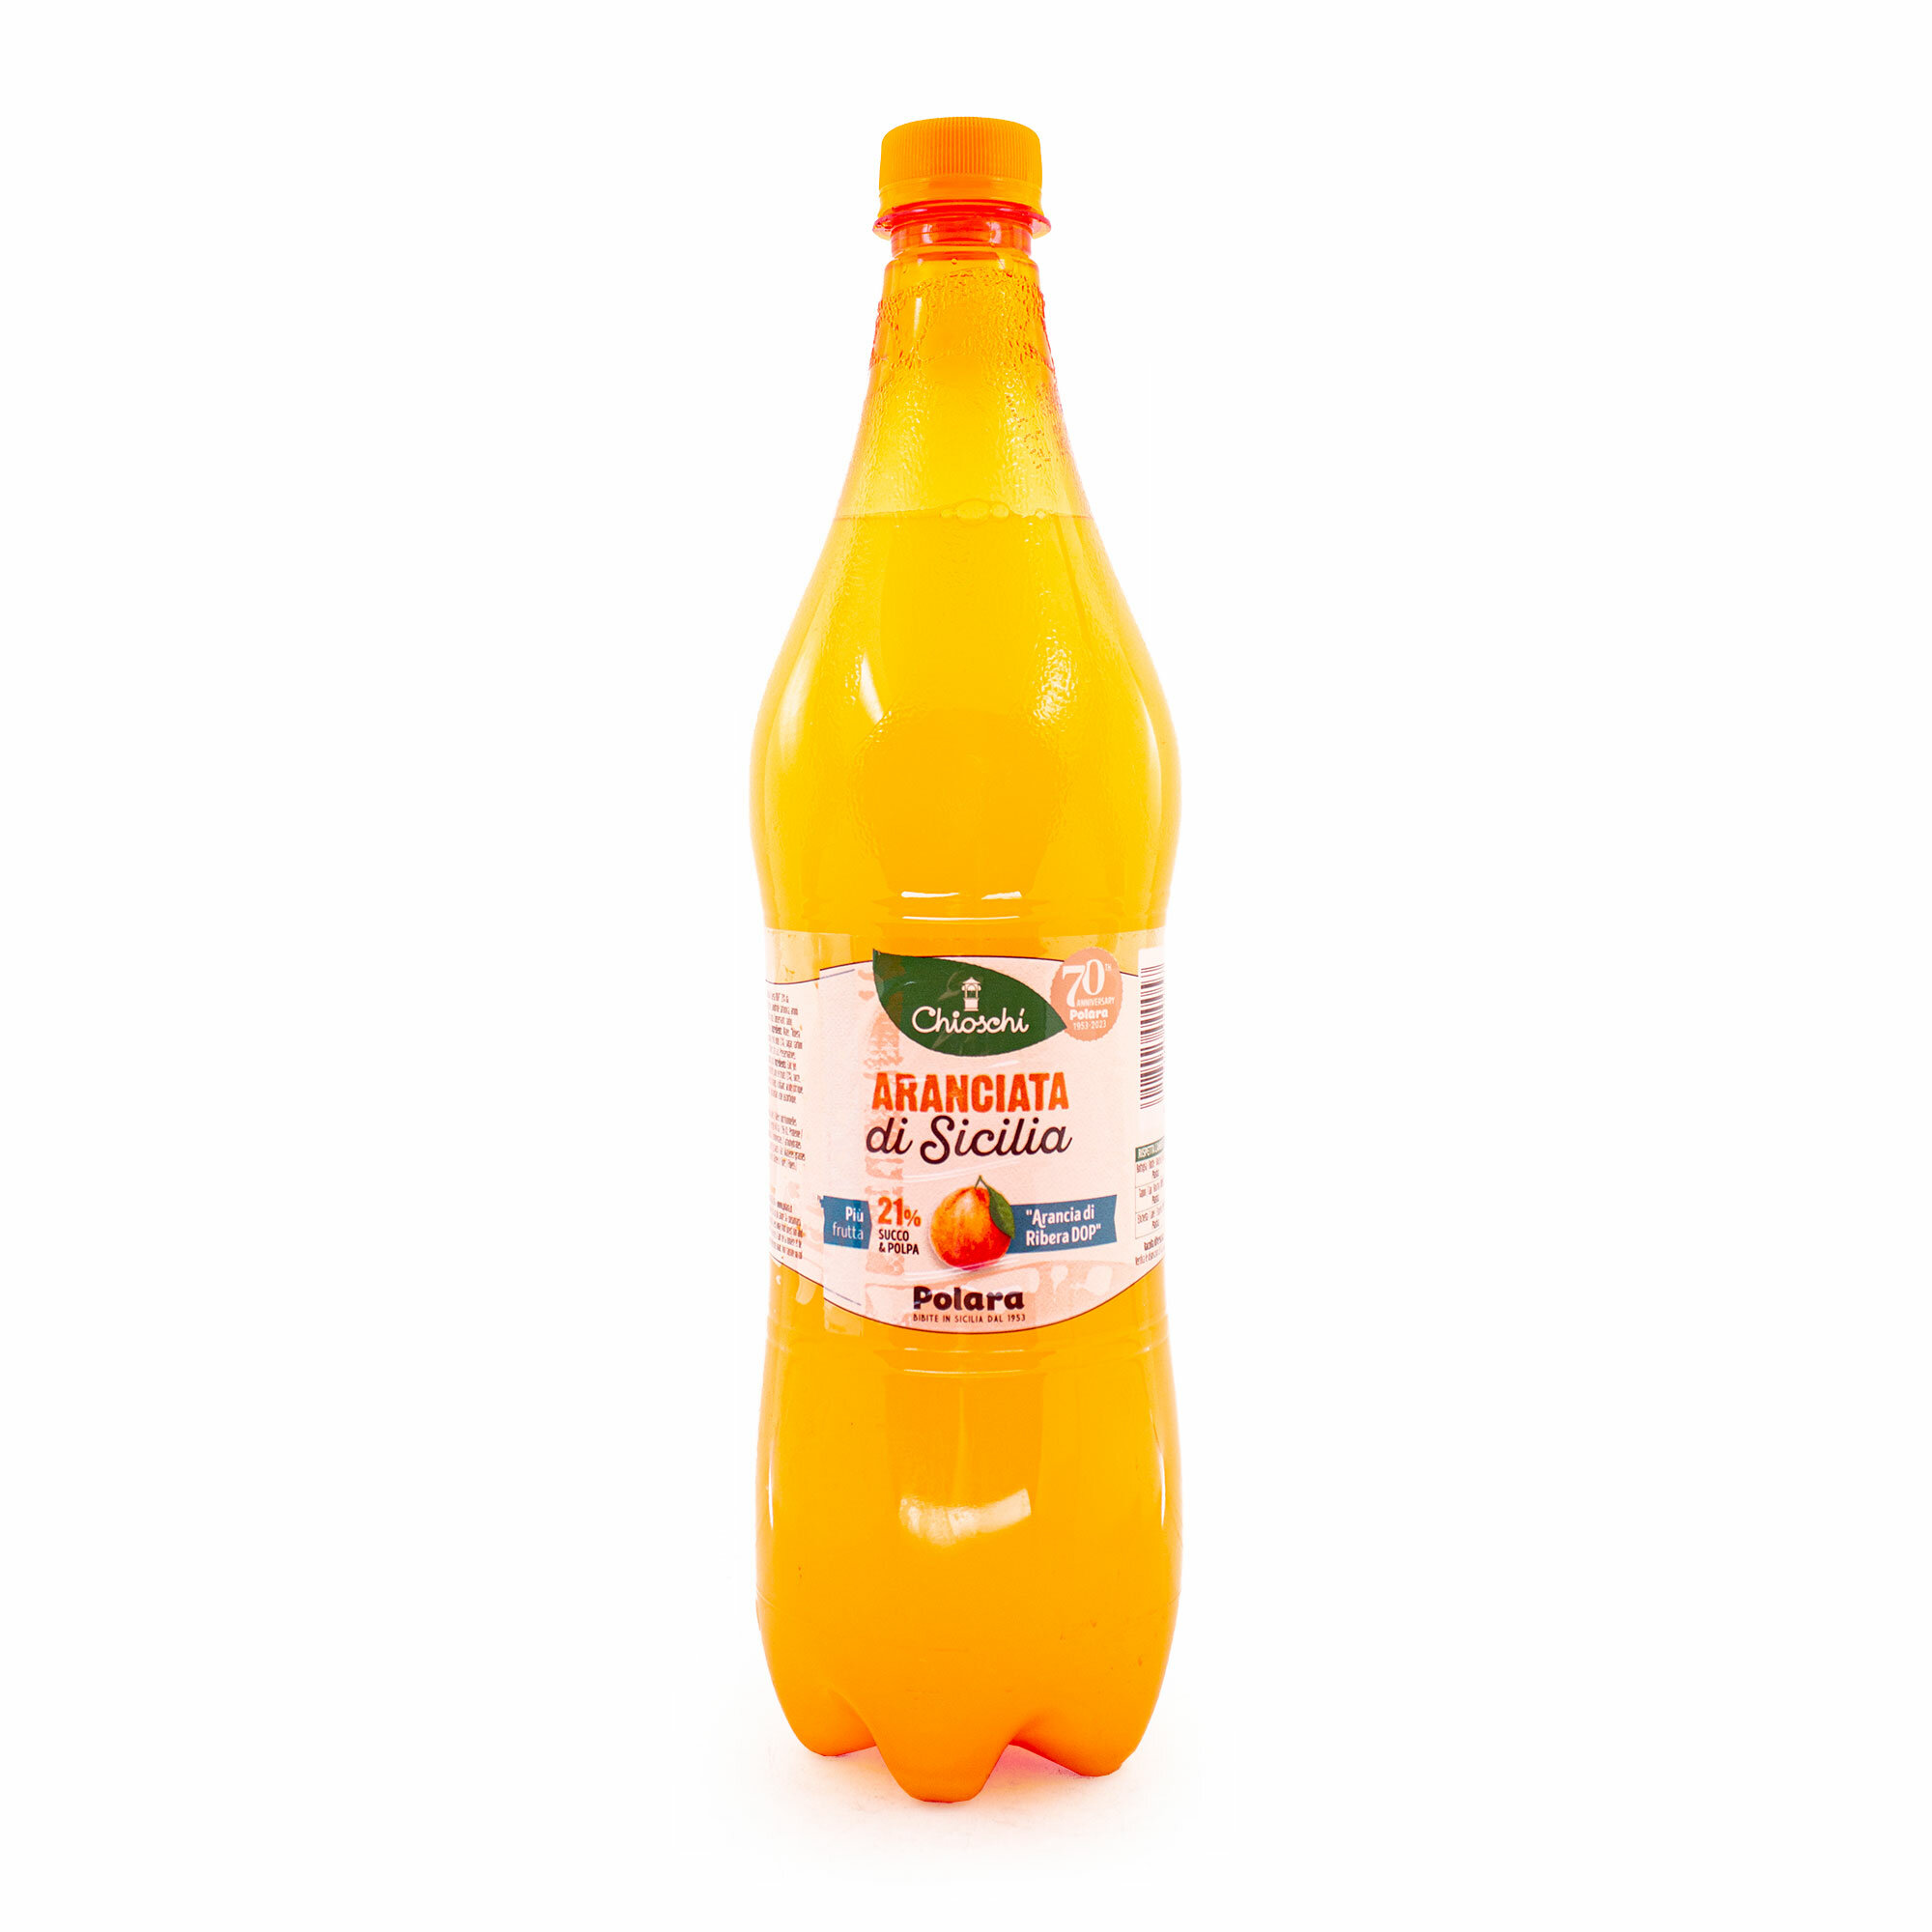 Лимонад из сицилийских апельсинов Аранчата CHIOSCHI, POLARA, 0,950 л (пл/бут)